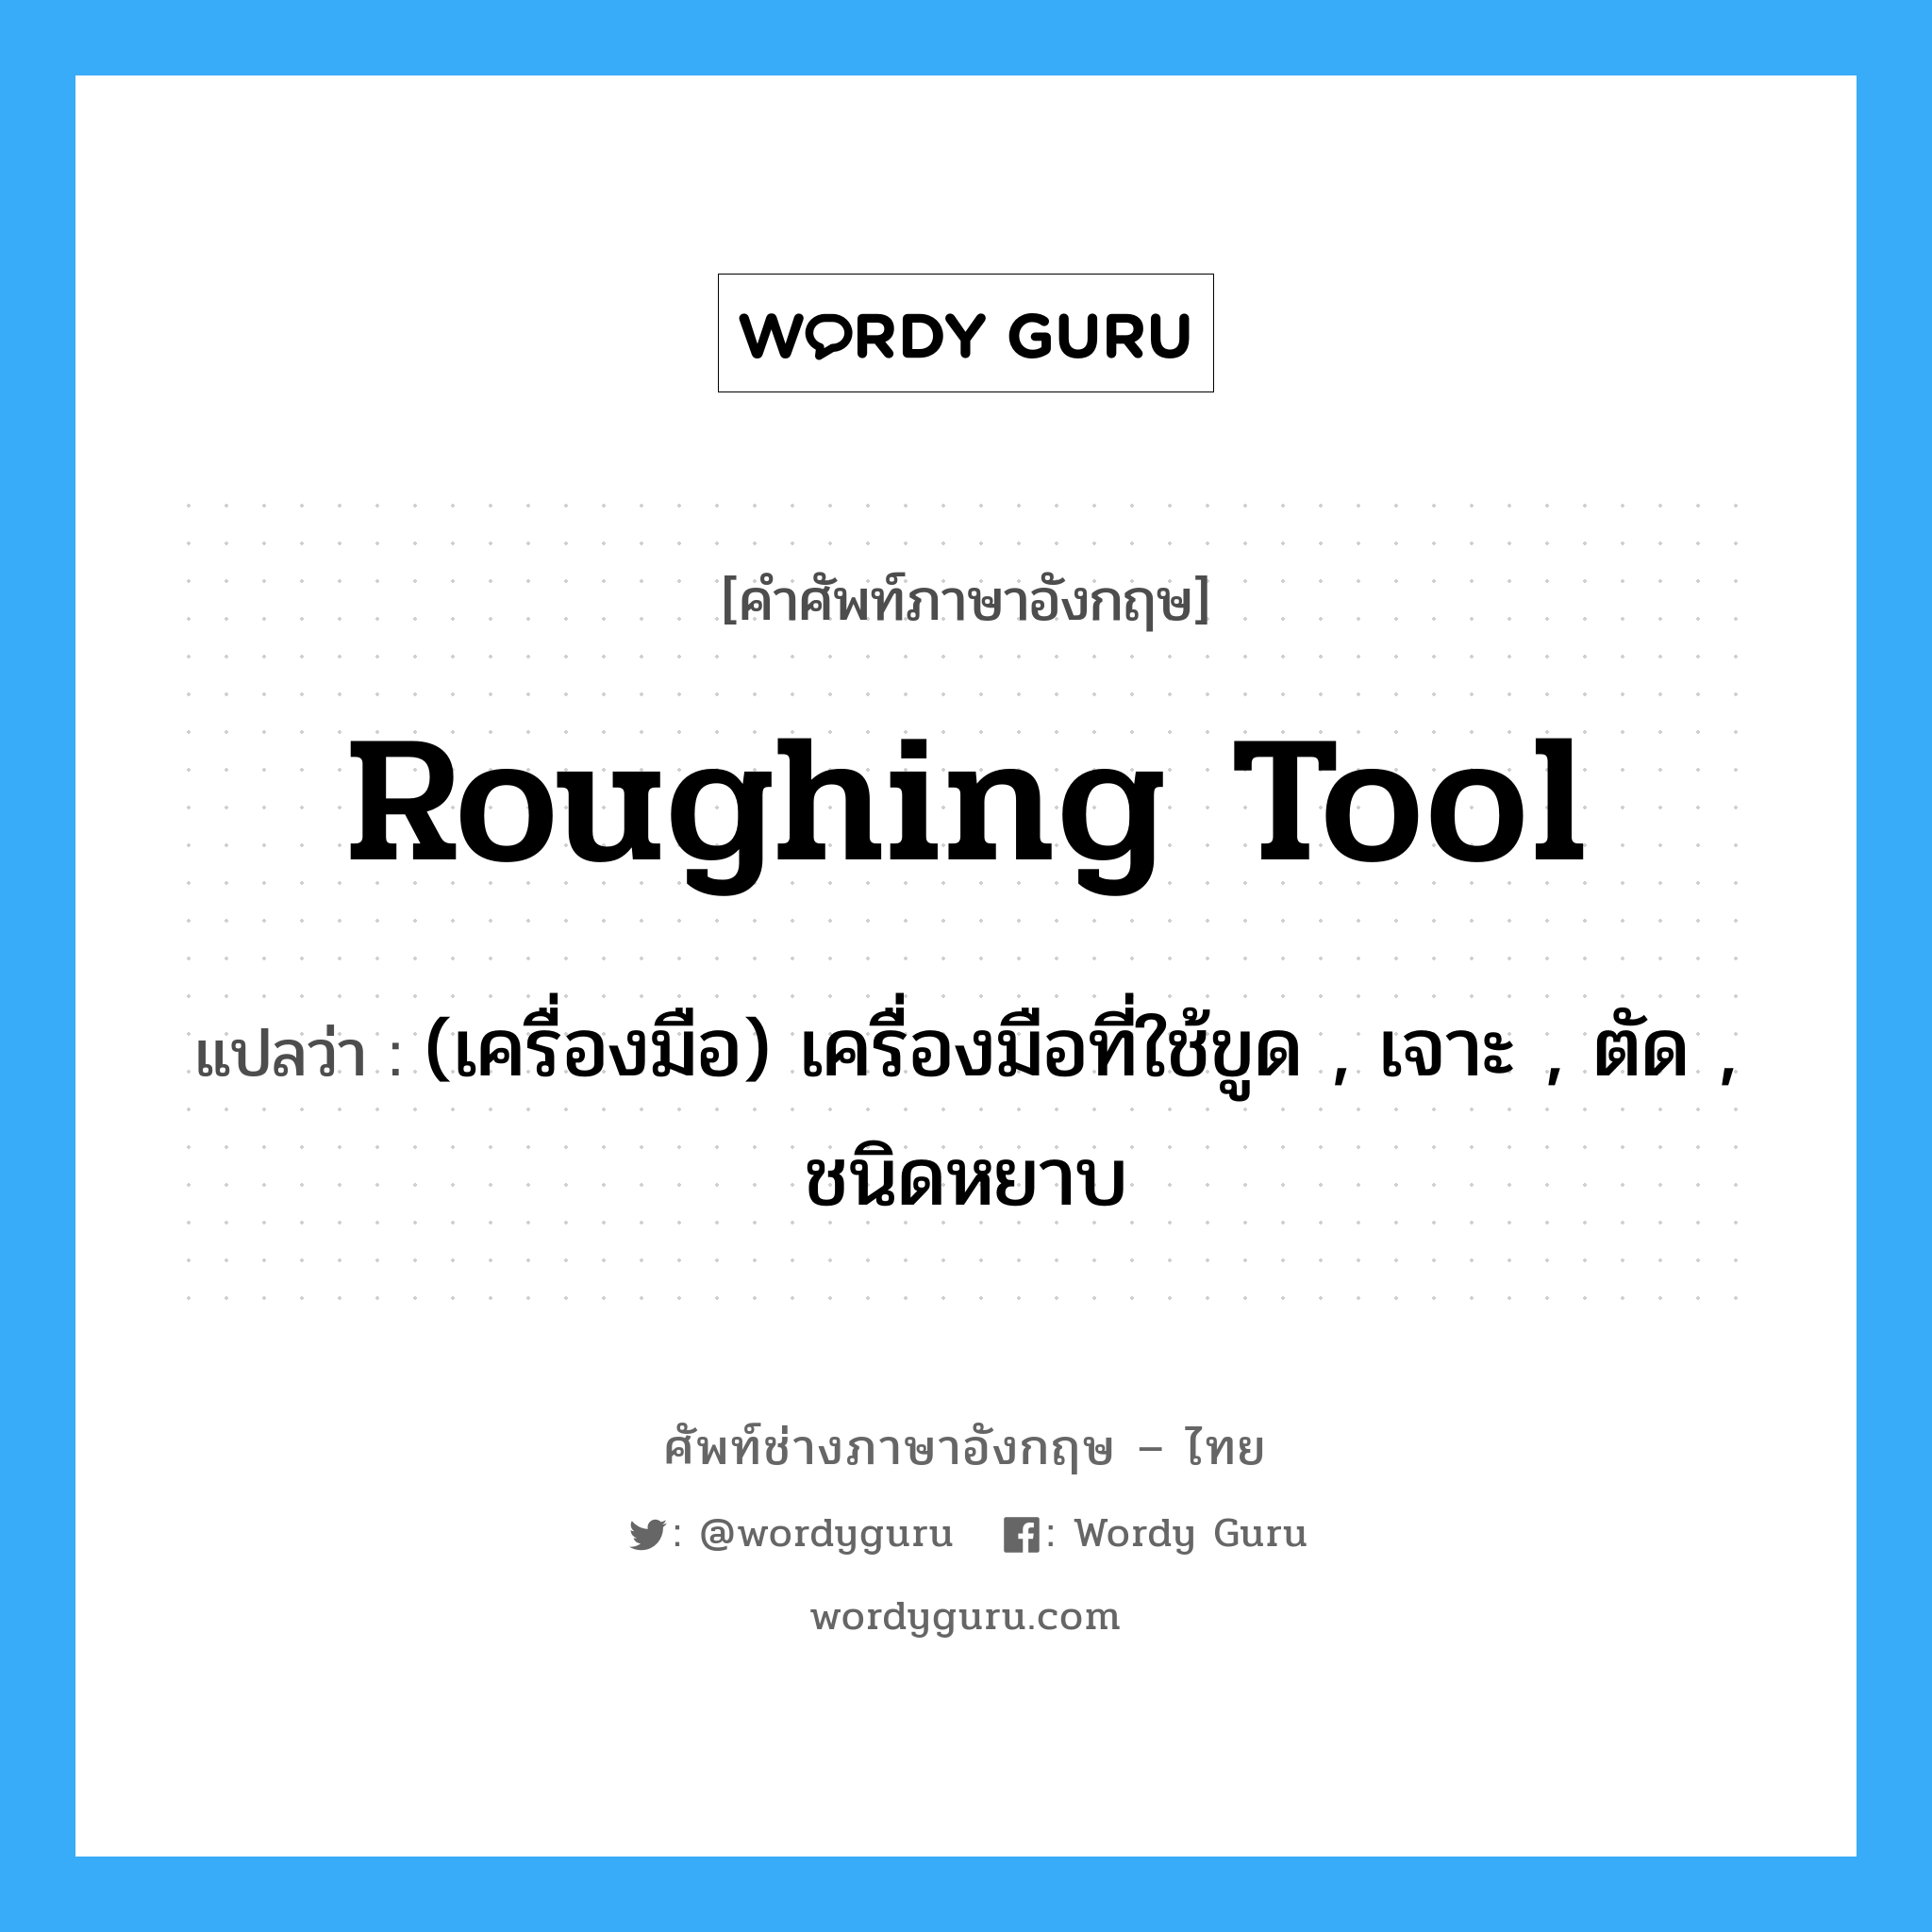 roughing tool แปลว่า?, คำศัพท์ช่างภาษาอังกฤษ - ไทย roughing tool คำศัพท์ภาษาอังกฤษ roughing tool แปลว่า (เครื่องมือ) เครื่องมือที่ใช้ขูด , เจาะ , ตัด , ชนิดหยาบ